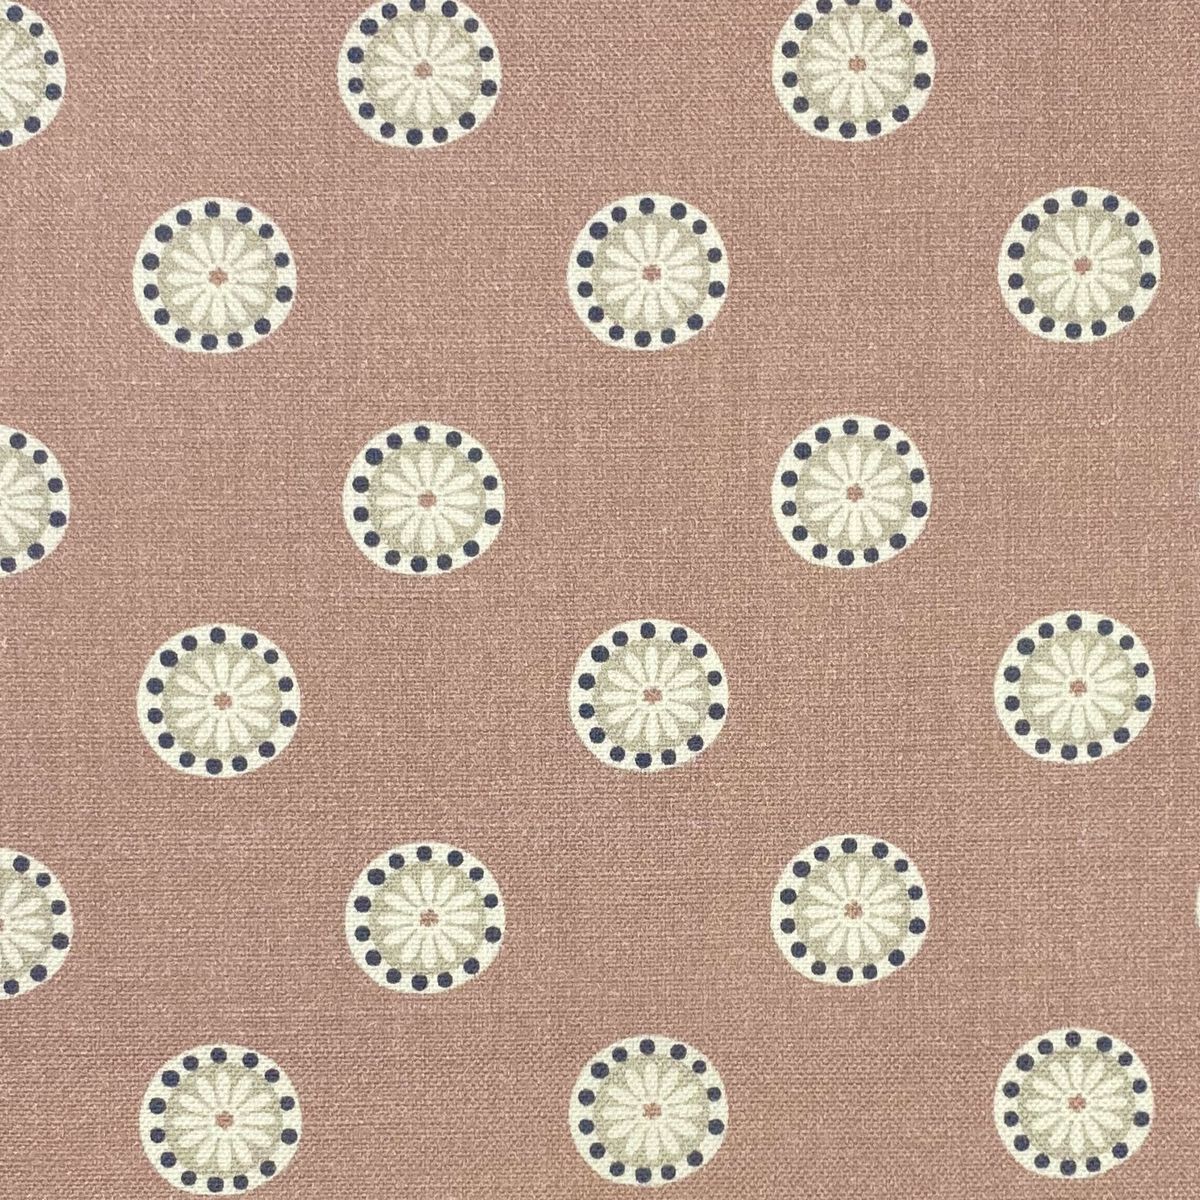 Shenstone Blush Fabric by Chatham Glyn